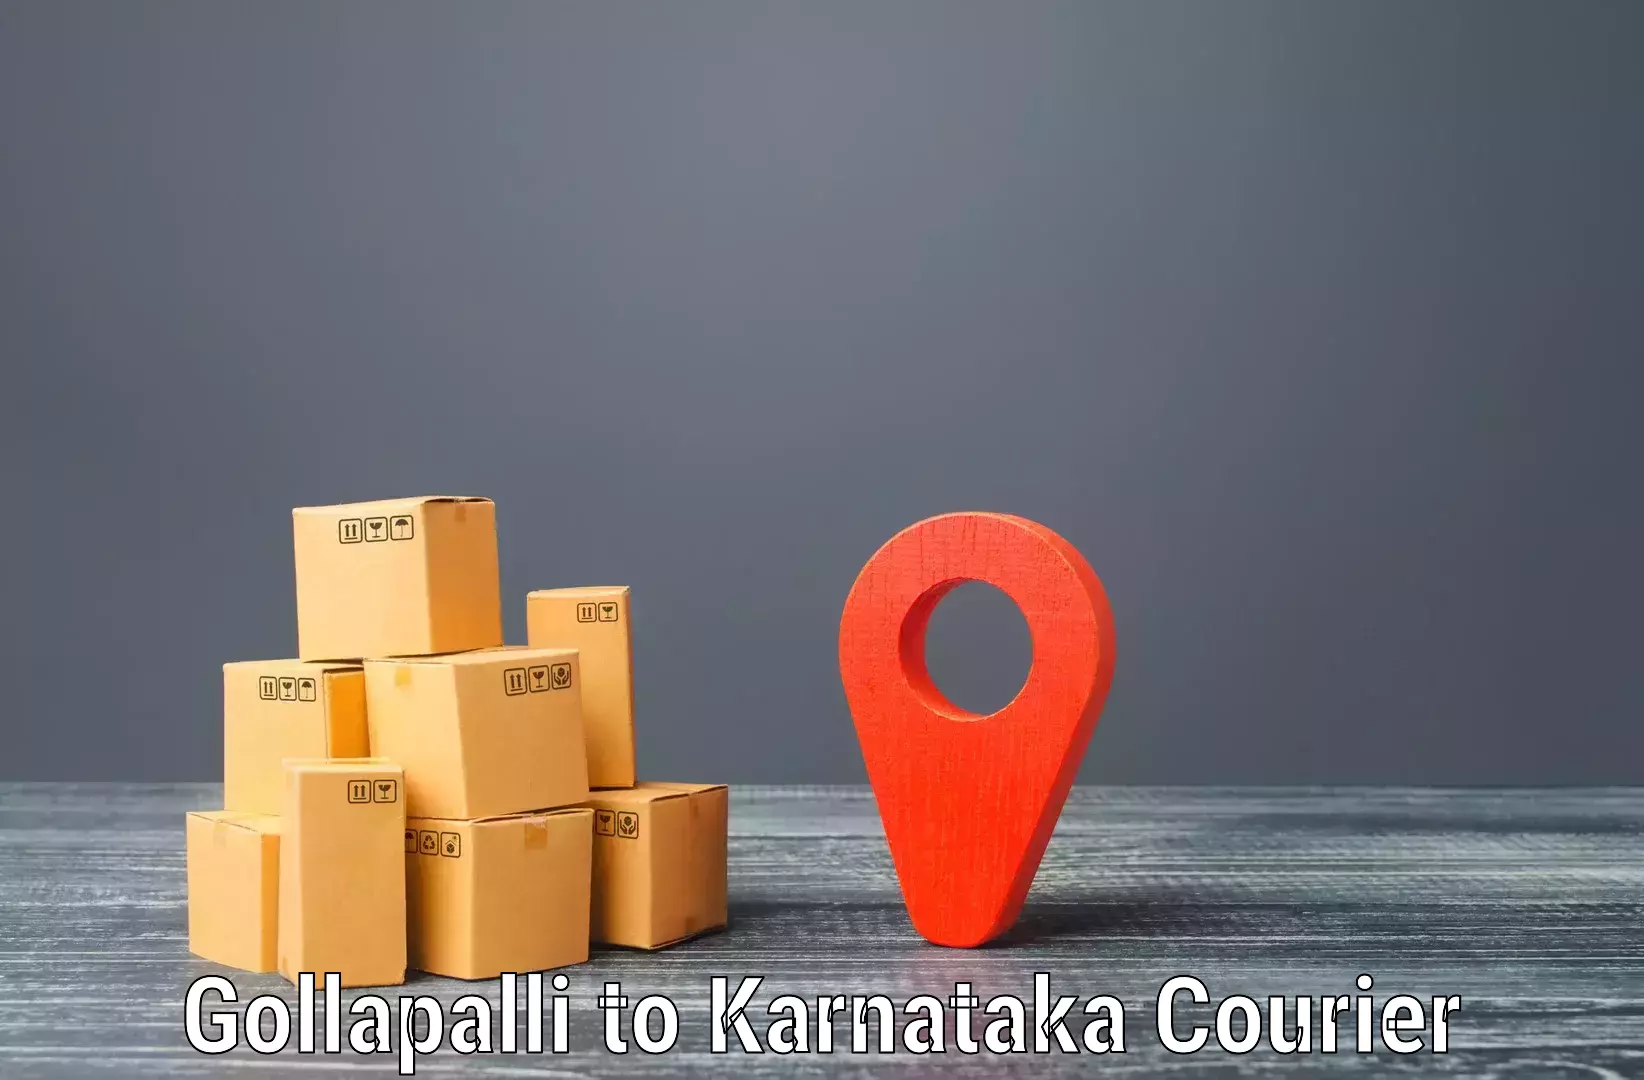 Personalized courier experiences Gollapalli to Ittigi